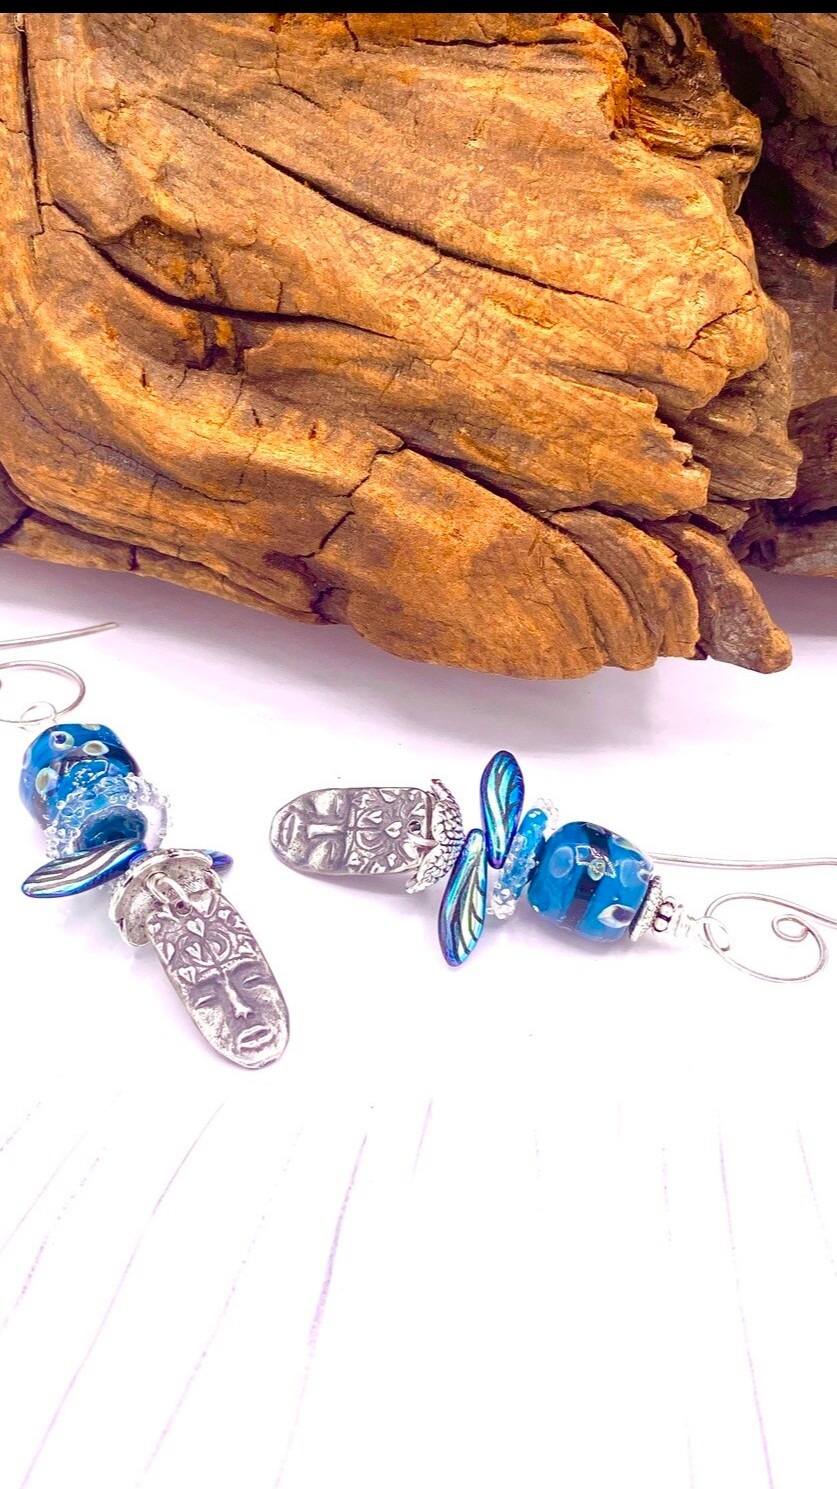 Buy Ornamental Handmade Copper Earrings With Lampwork Beads & Painted Enamel